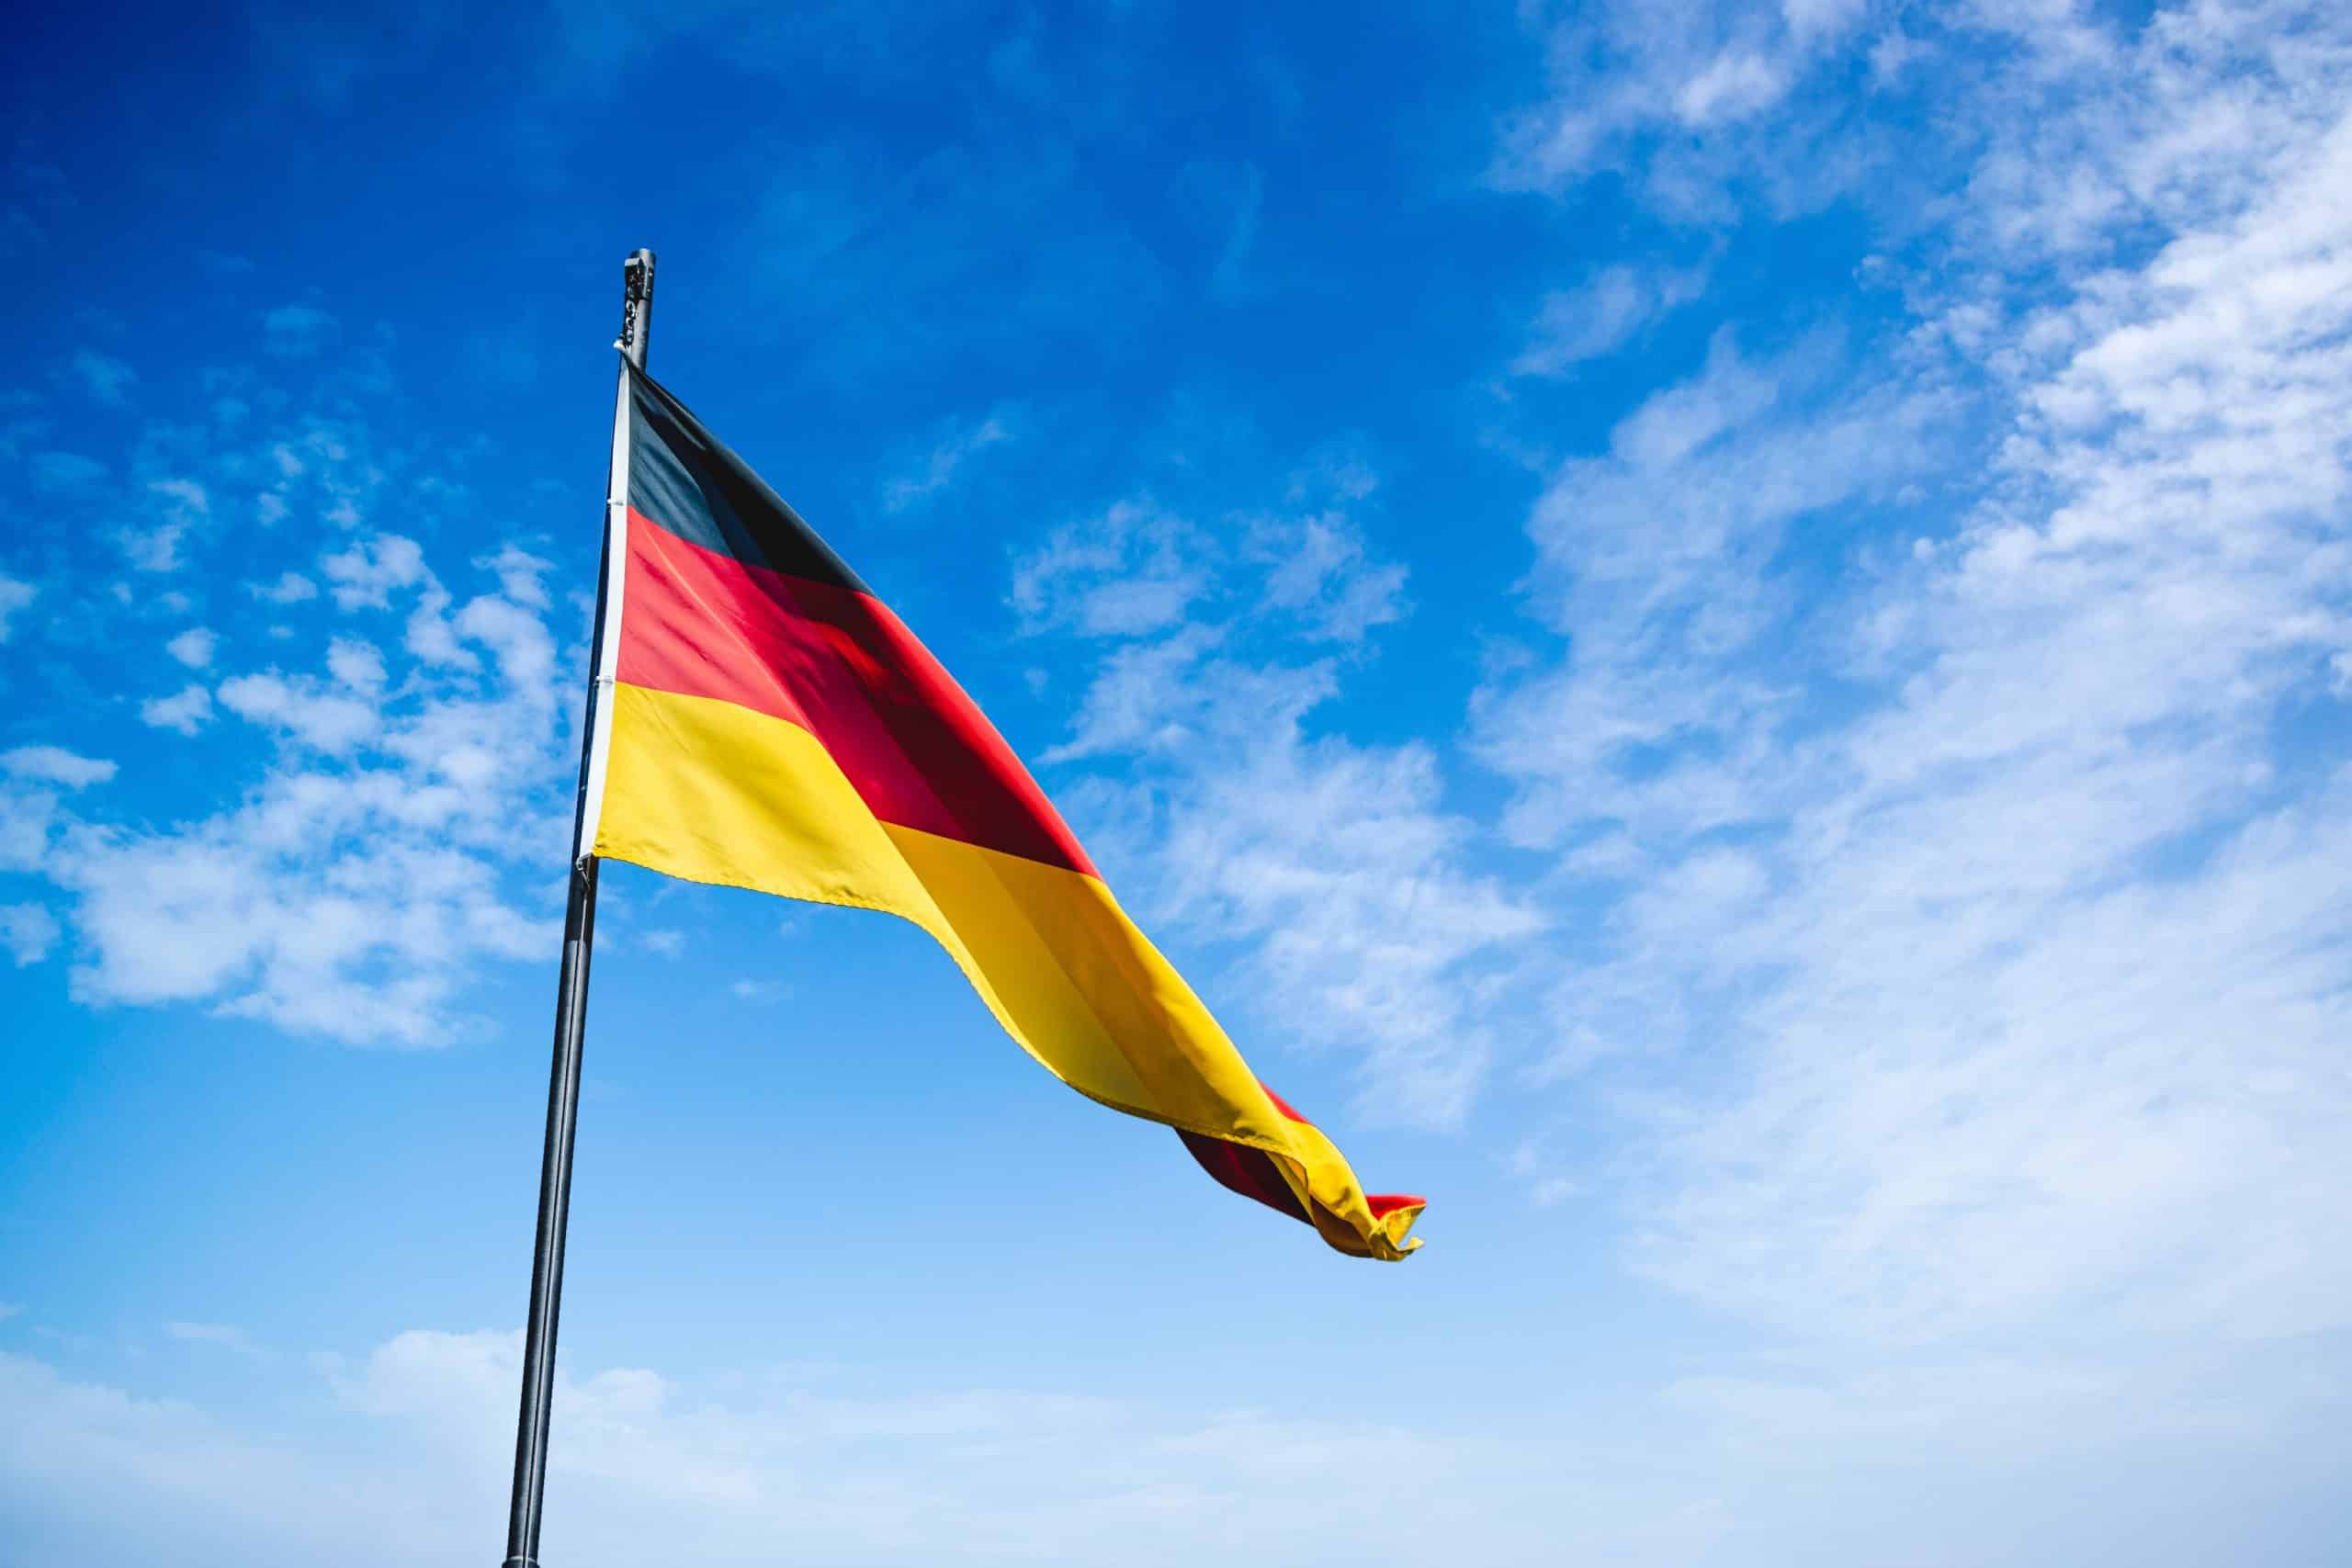 Le drapeau allemand flottant dans le ciel